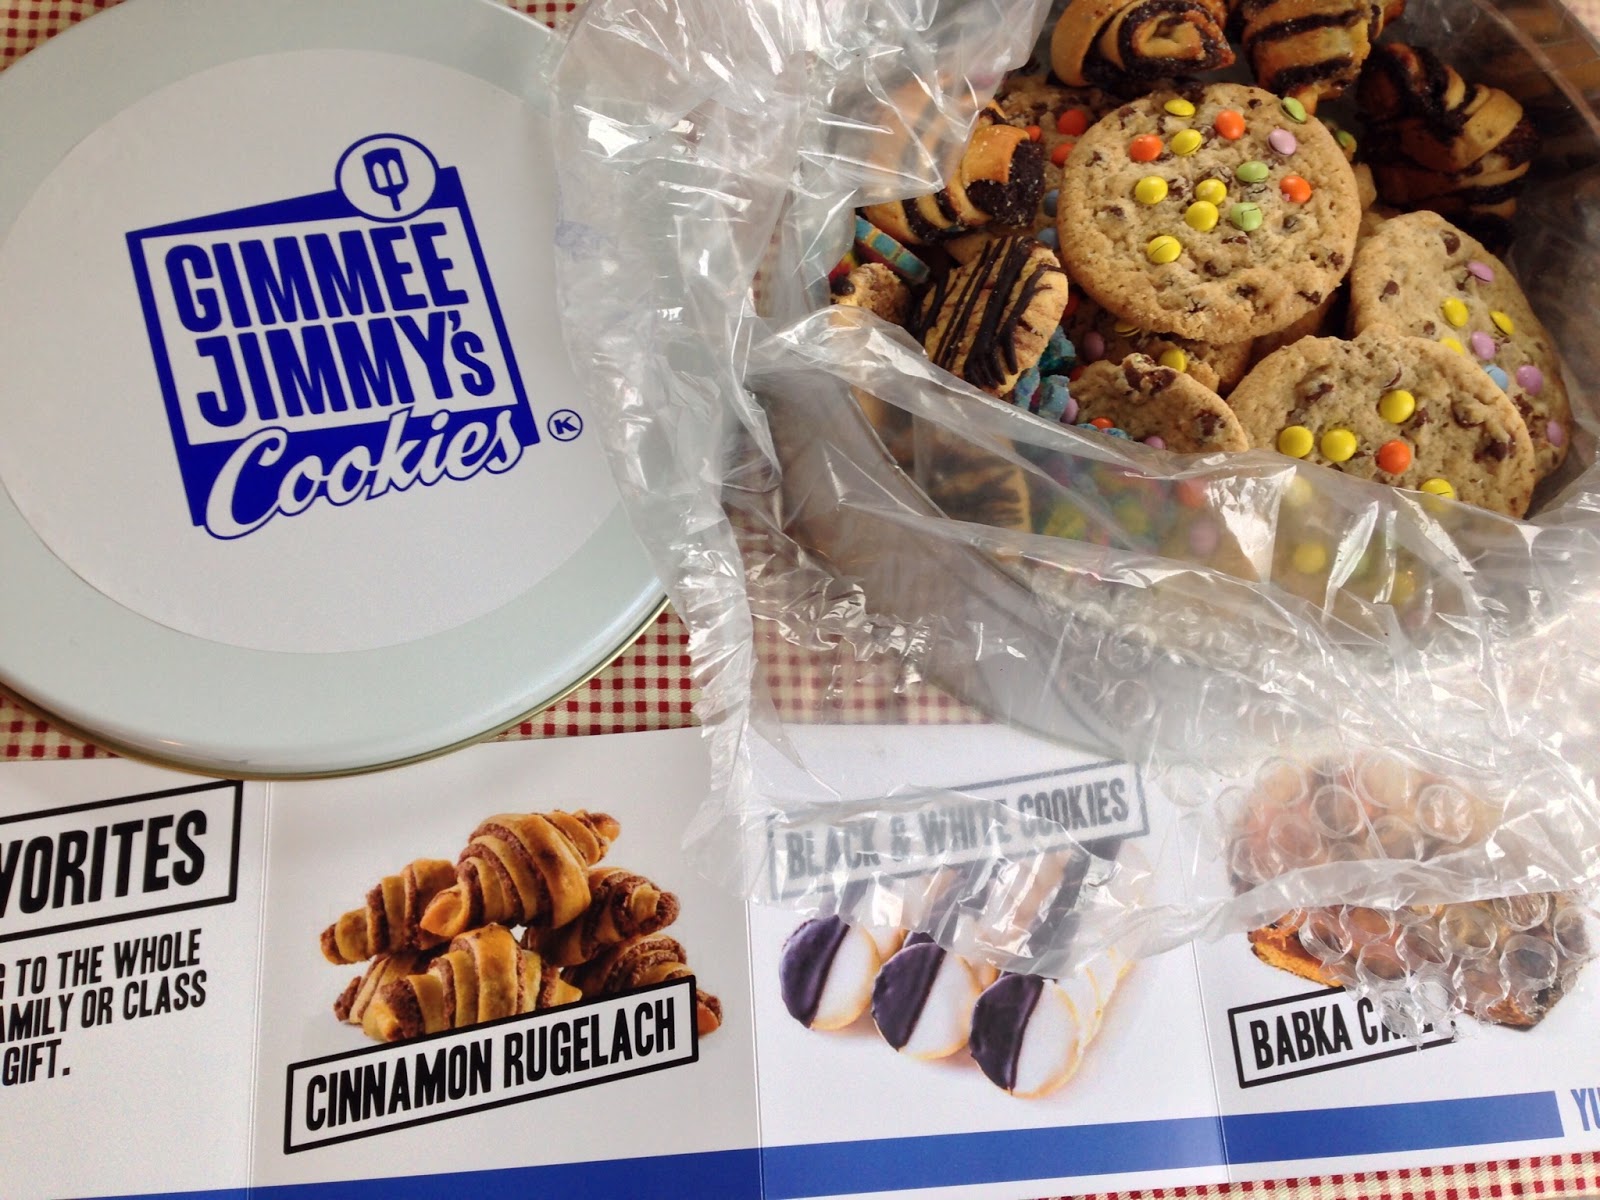 Gimmee Jimmy's Cookies Packaging